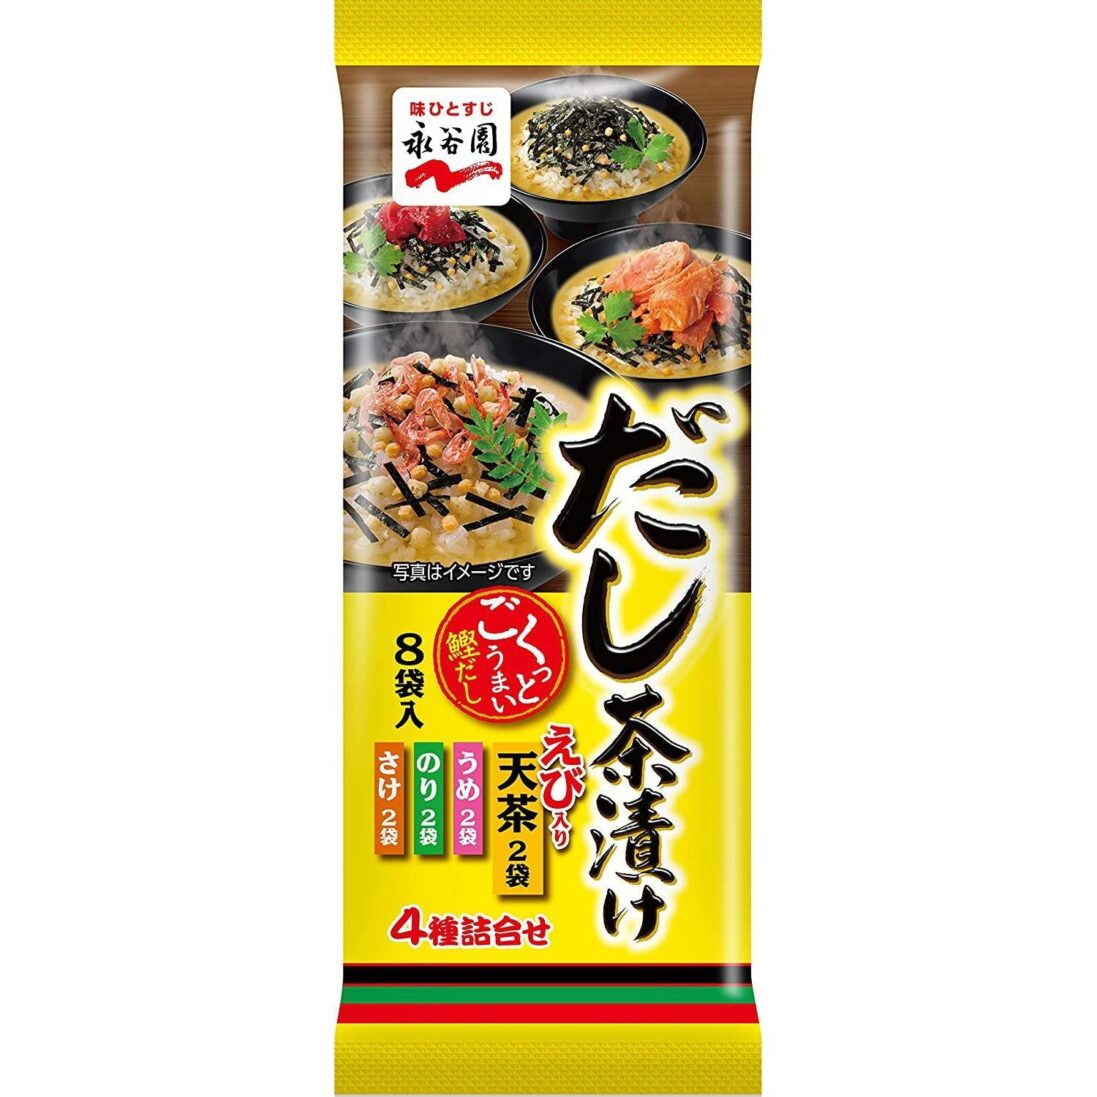 Nagatanien-Dashi-Chazuke-8-Servings-Japanese-Taste_2048x.jpg